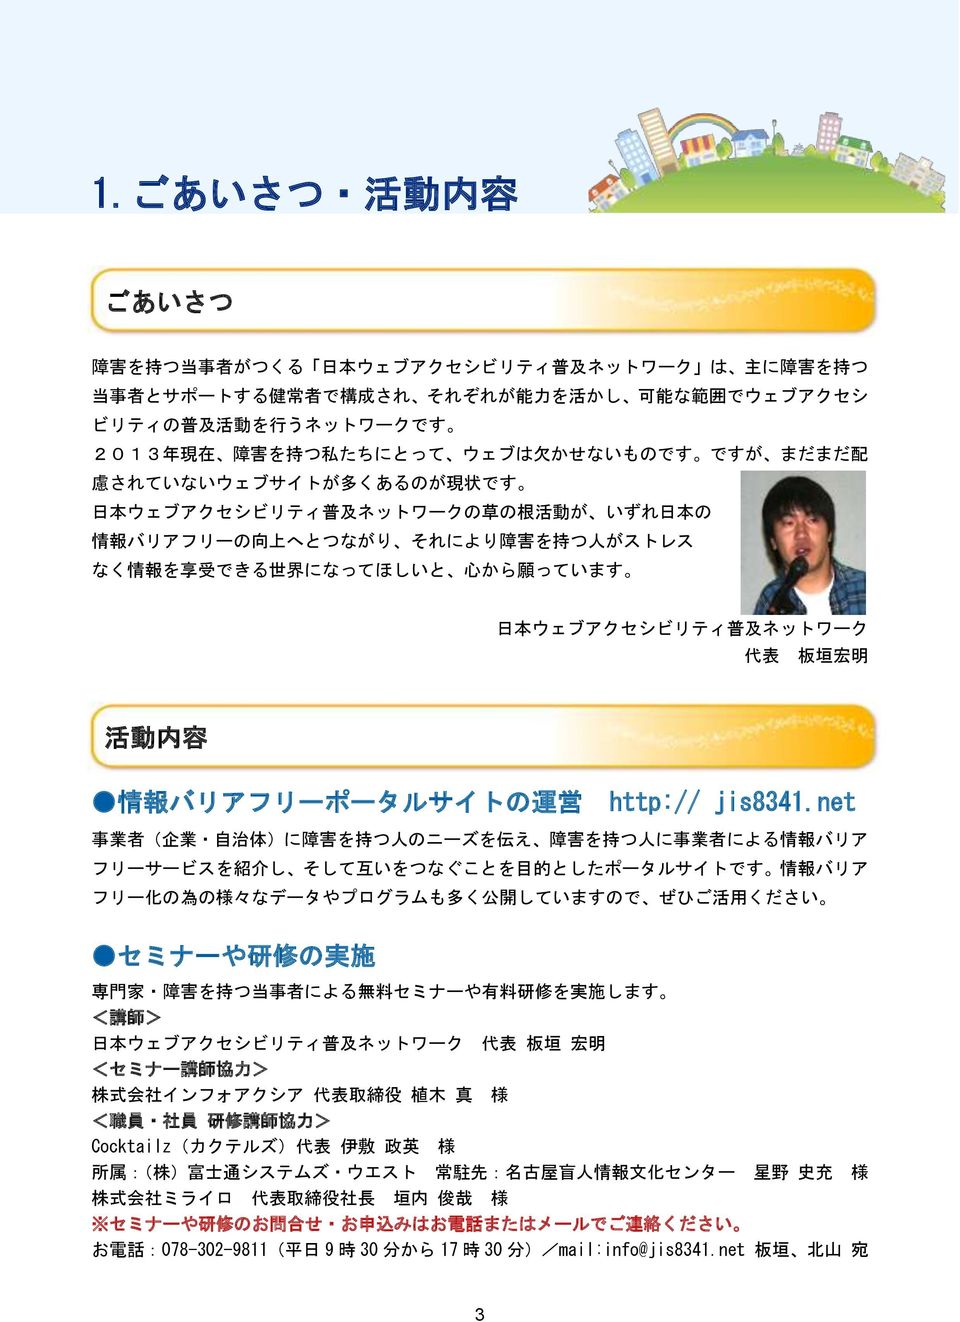 願 っています 日 本 ウェブアクセシビリティ 普 及 ネットワーク 代 表 板 垣 宏 明 活 動 内 容 情 報 バリアフリーポータルサイトの 運 営 http:// jis8341.